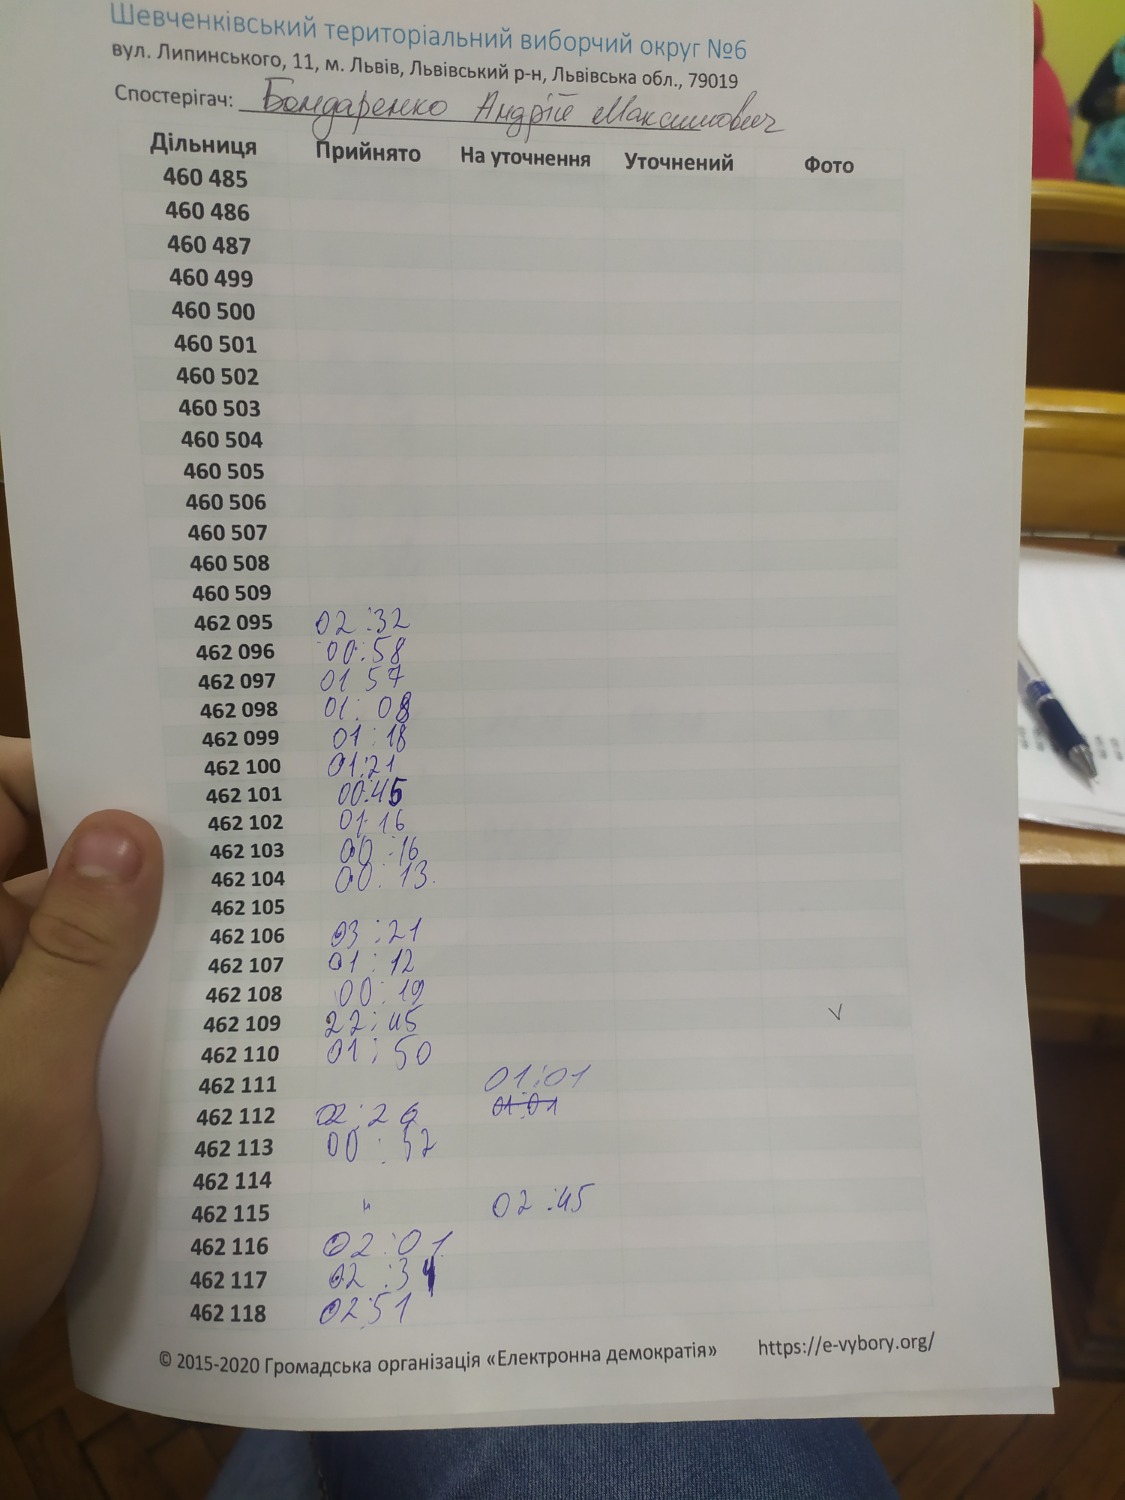 Протокол результатів голосування на виборчій дільниці № 462106